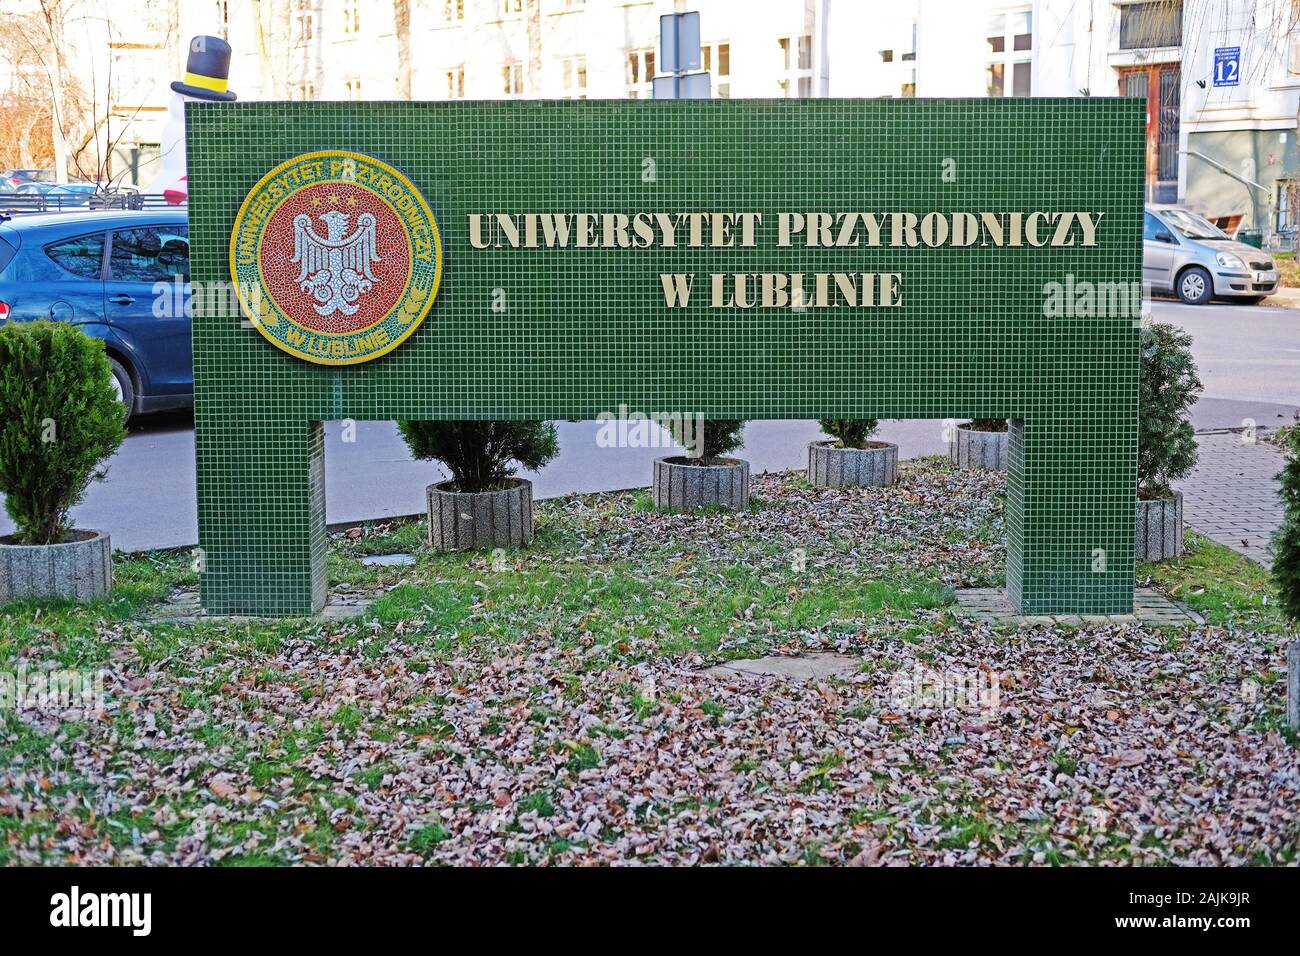 Lublin, Poland 01/03/2019 Univeryste przyrodniczy w Lublinie 'University of Life Sciences in Lublin' Stock Photo